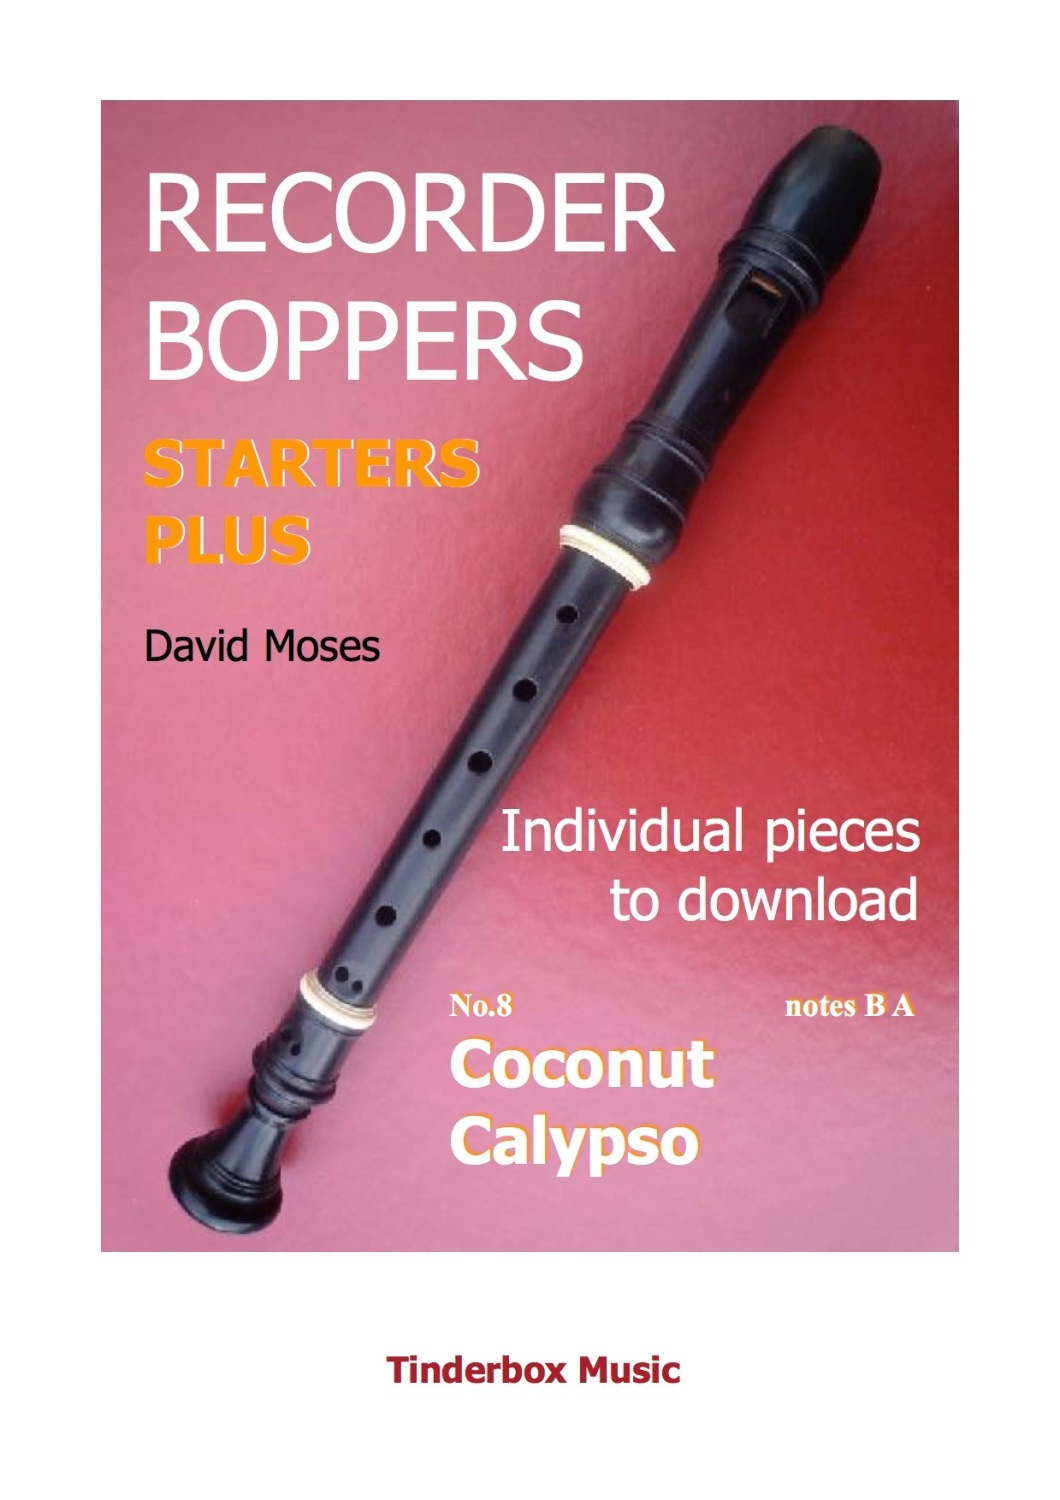 STARTERS PLUS individual pieces no.8  COCONUT CALYPSO download